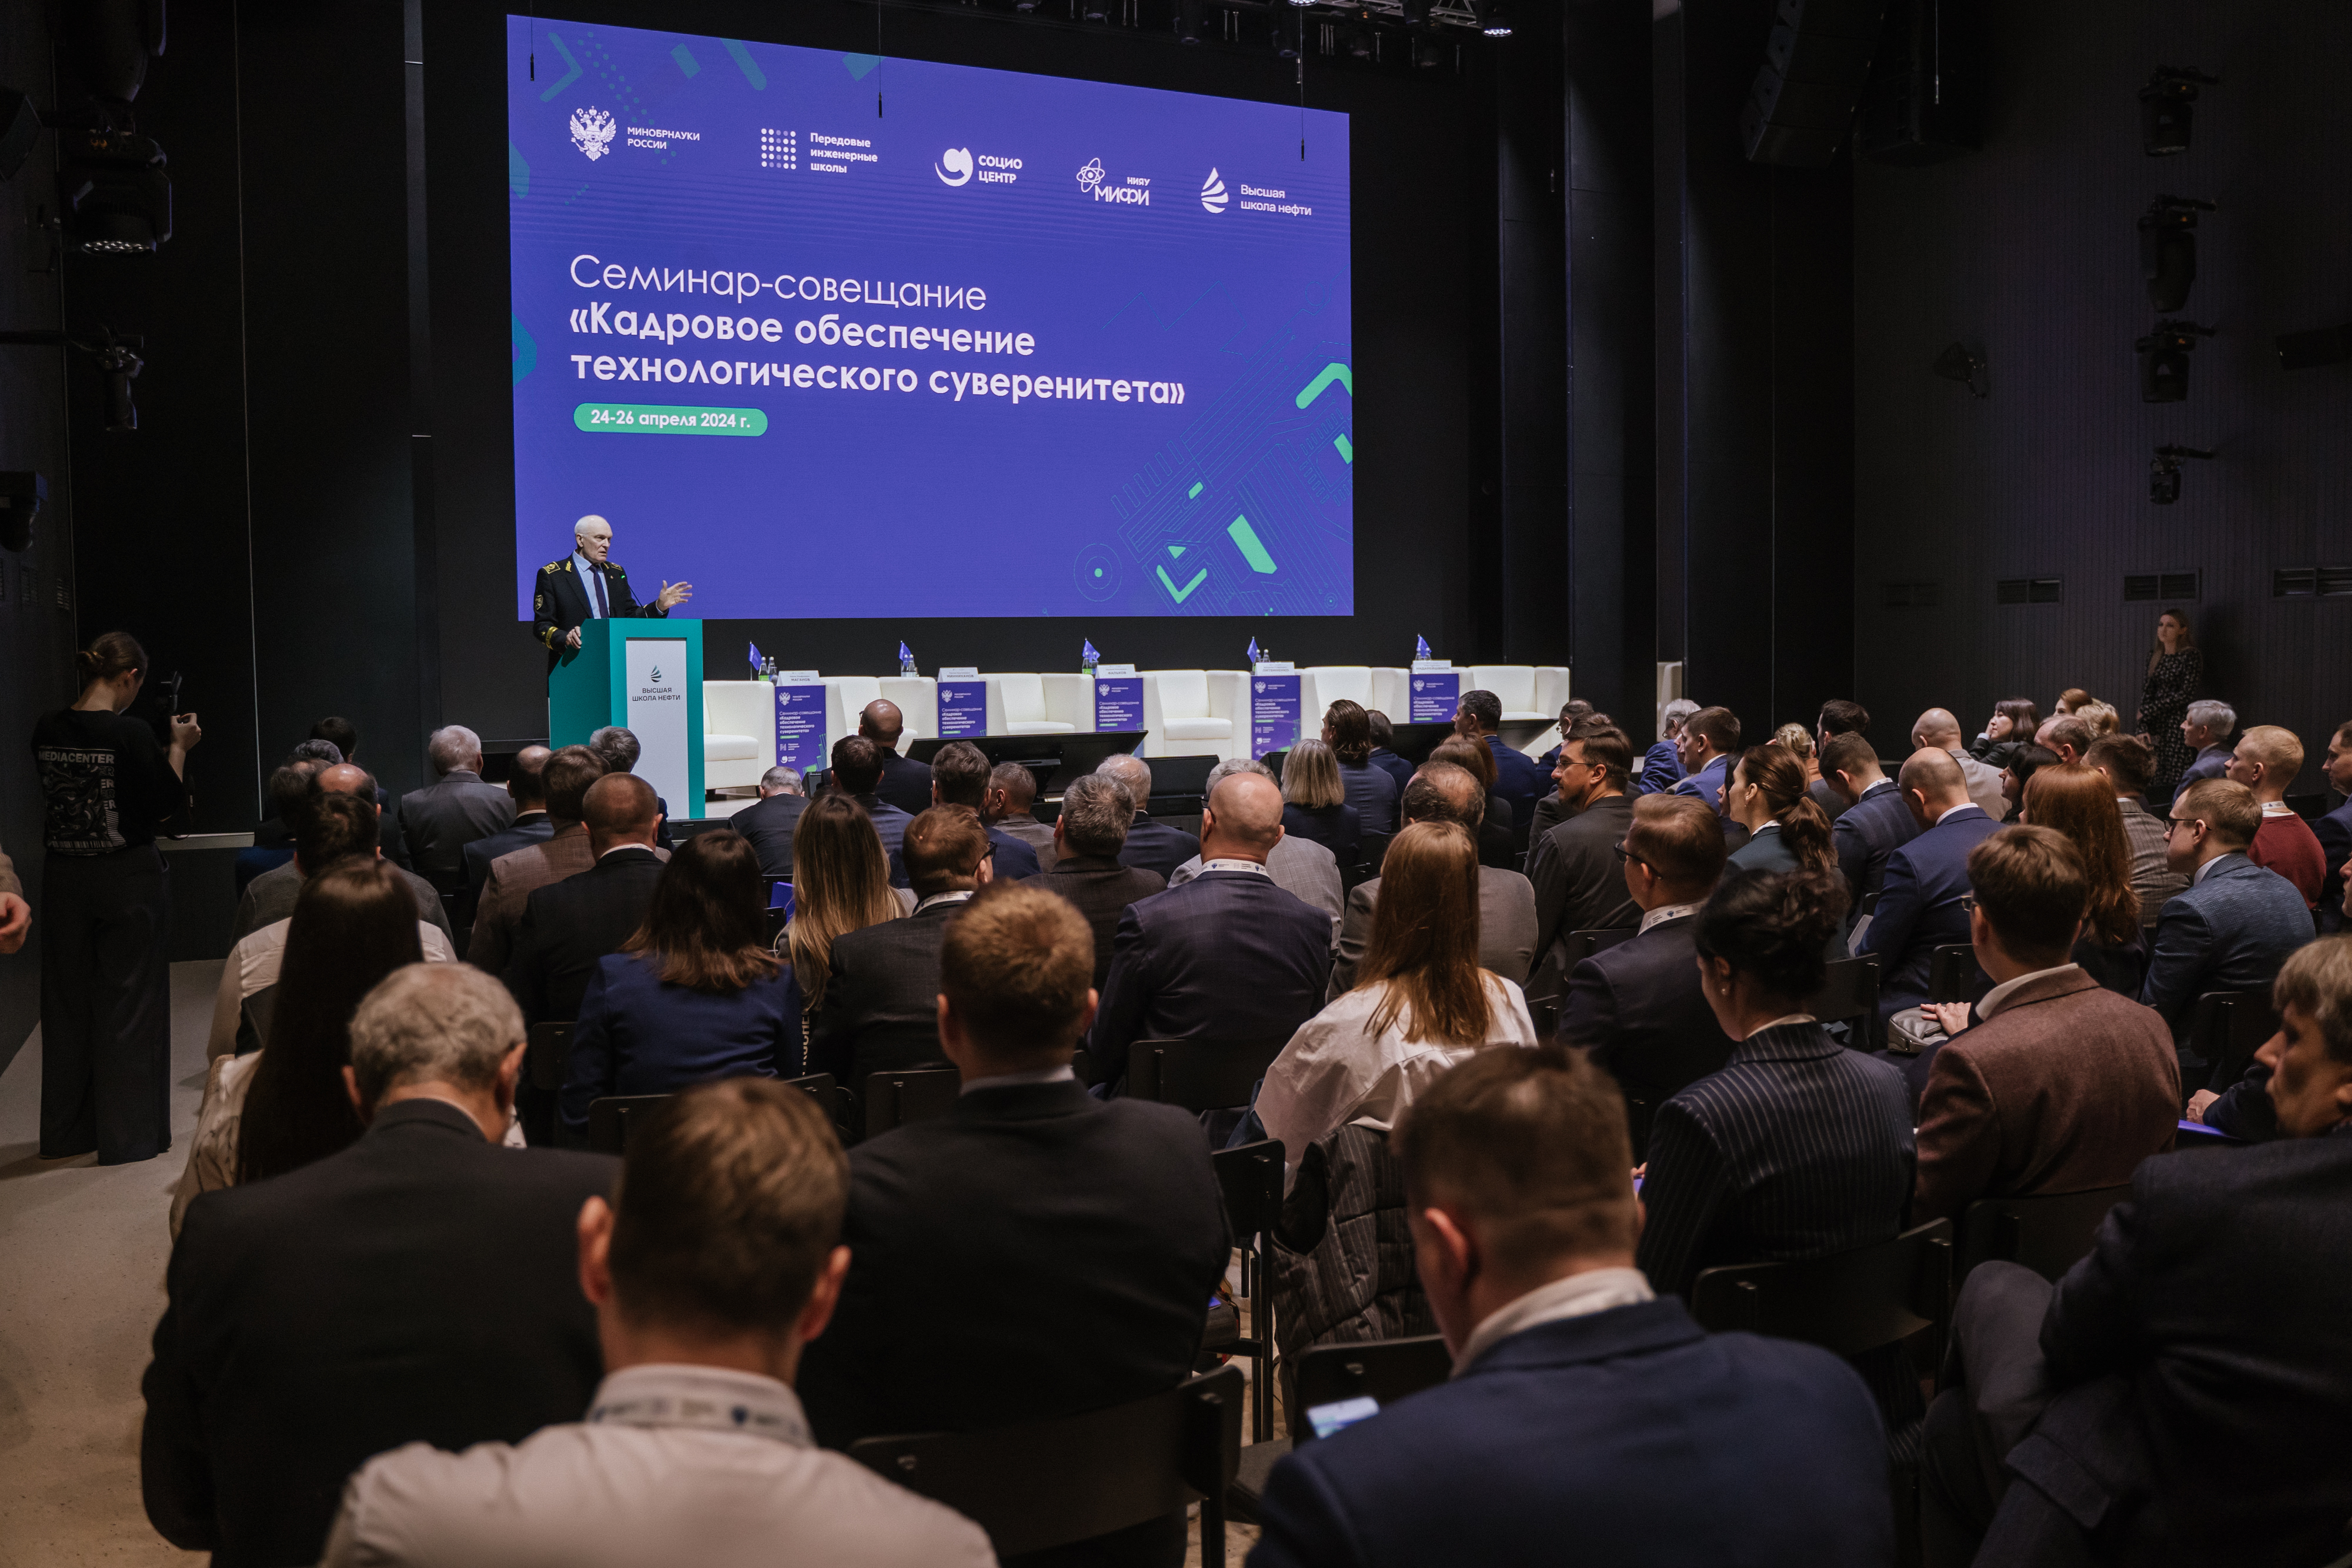 Более 200 участников и 50 передовых инженерных школ со всей России собрались на пленарной сессии